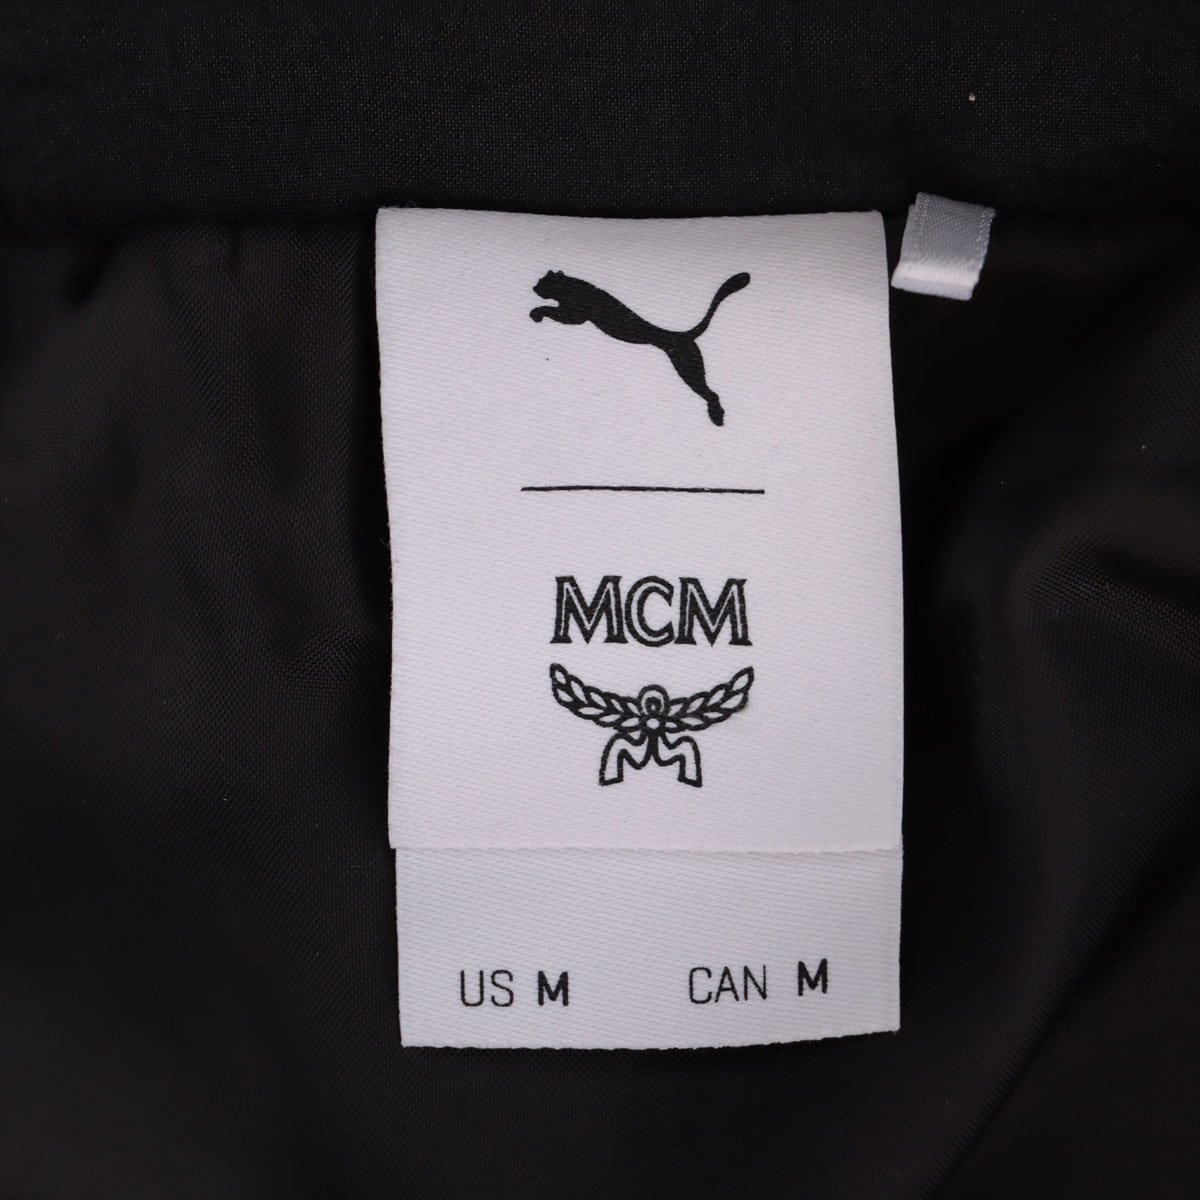 MCM ナイロン ナイロンジャケット M メンズ ブラック  pumaコラボ 品質タグ一部カット